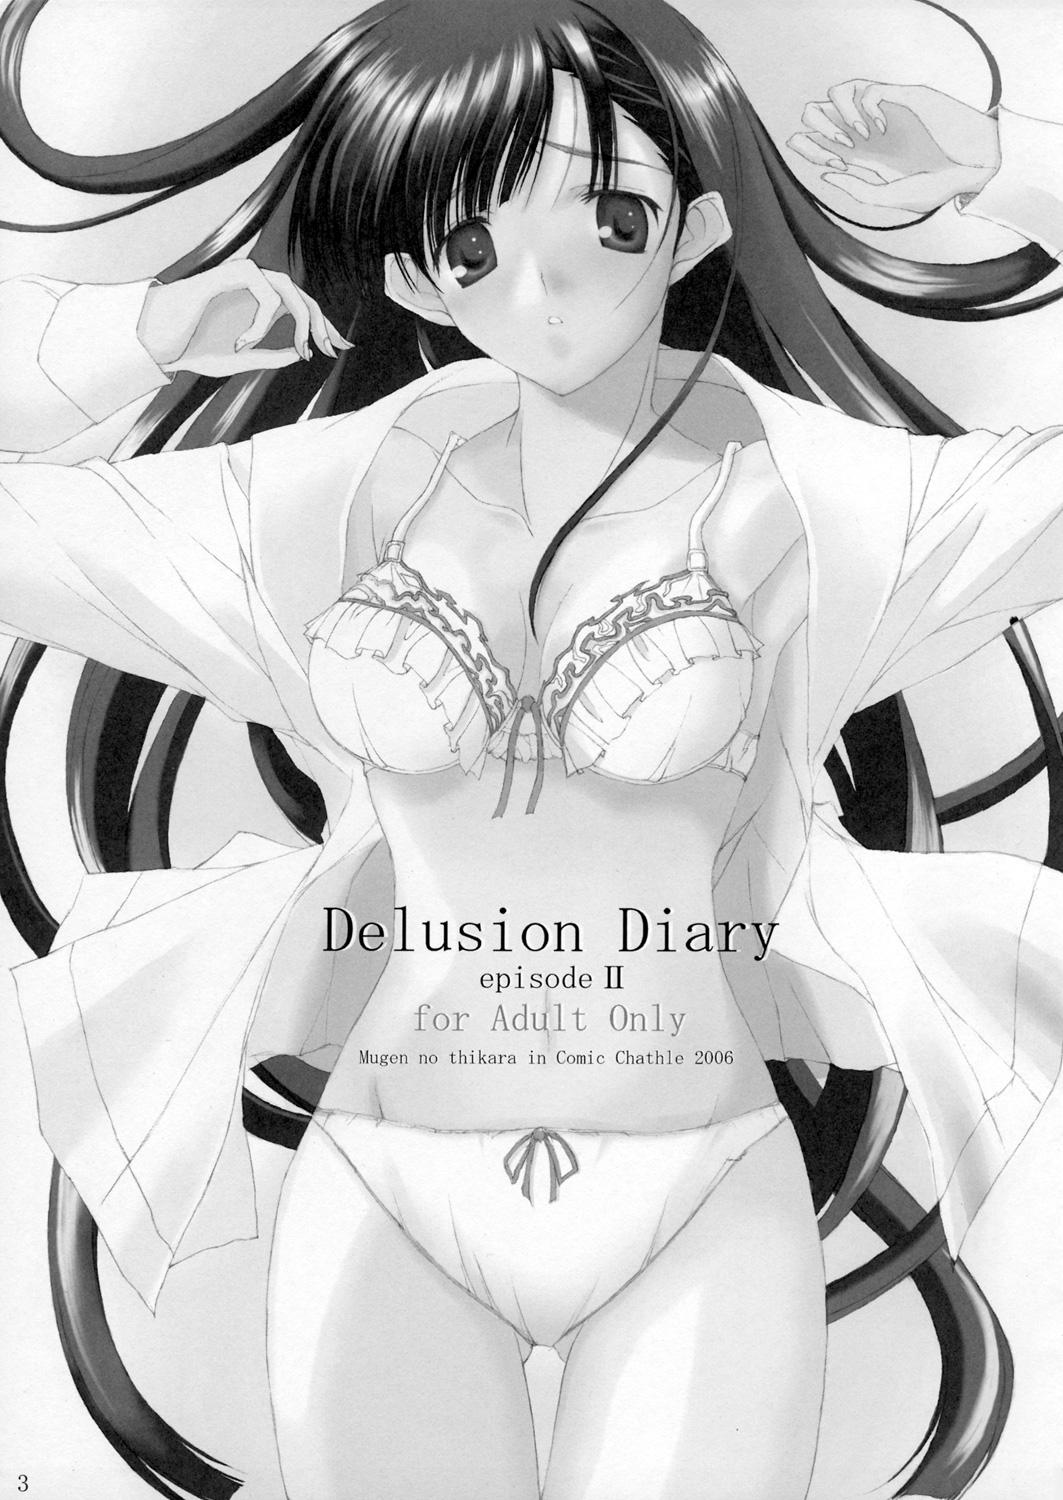 Delusion Diary episode II 1